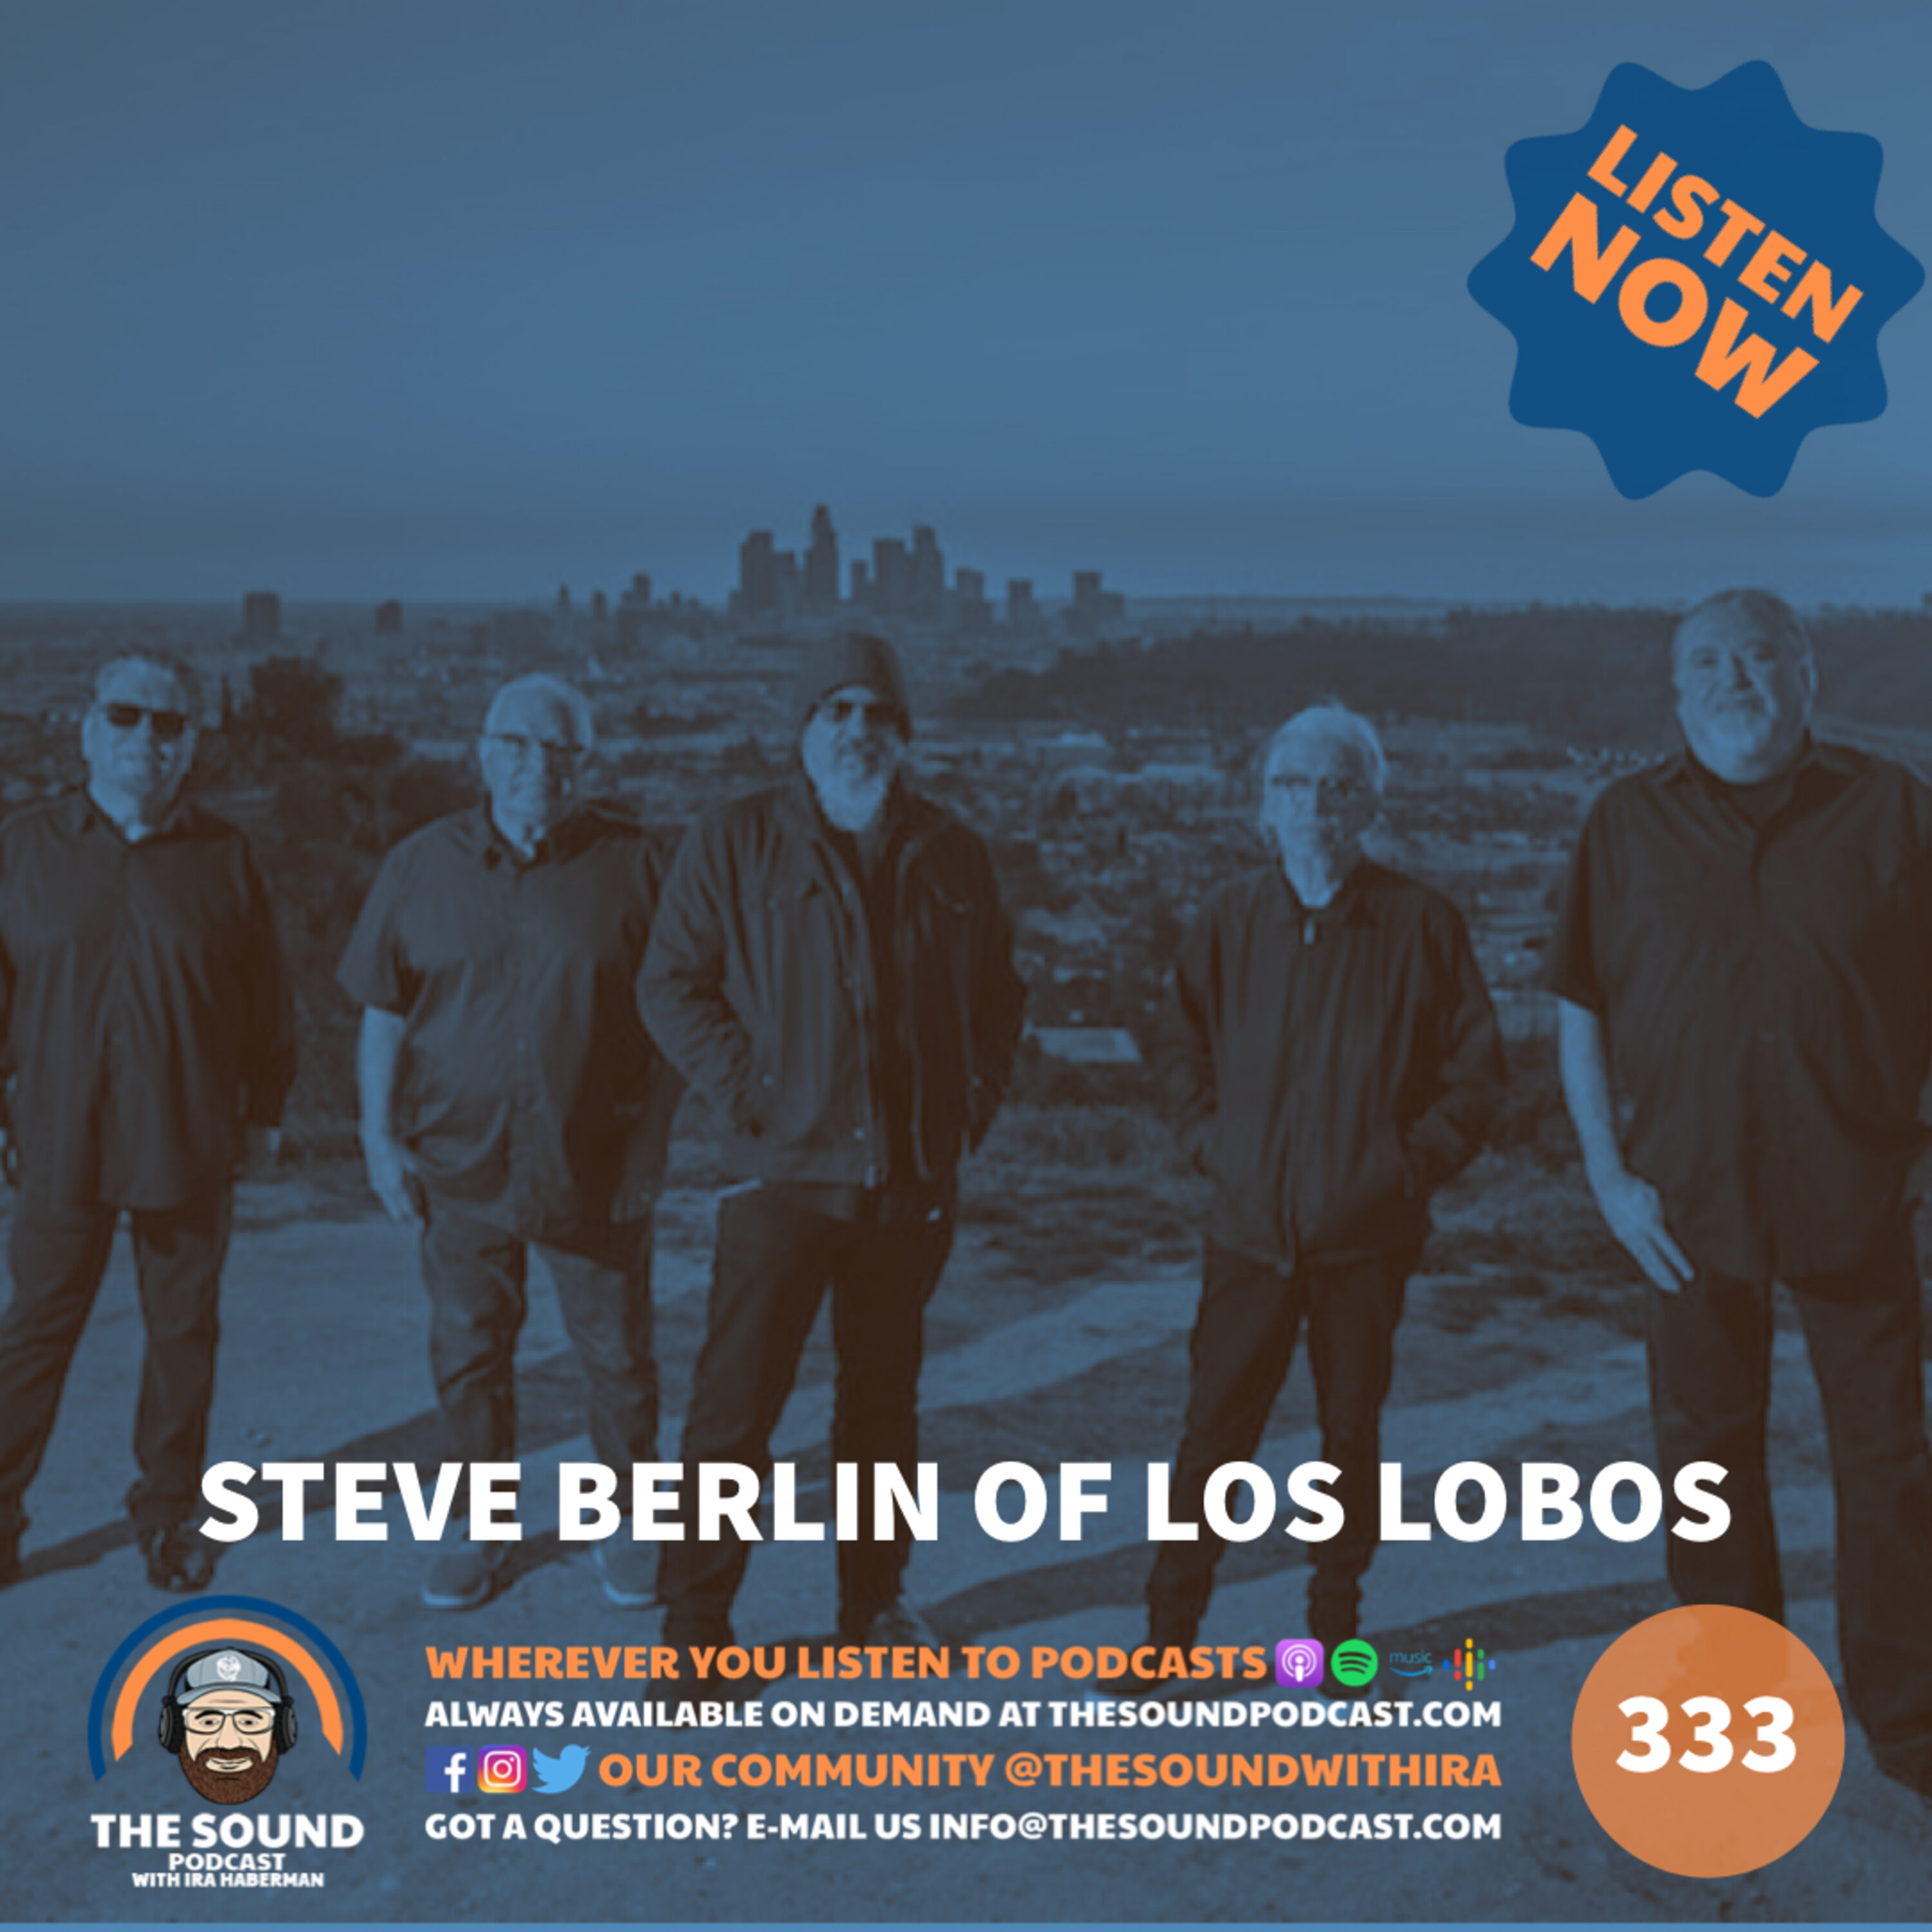 Steve Berlin of Los Lobos